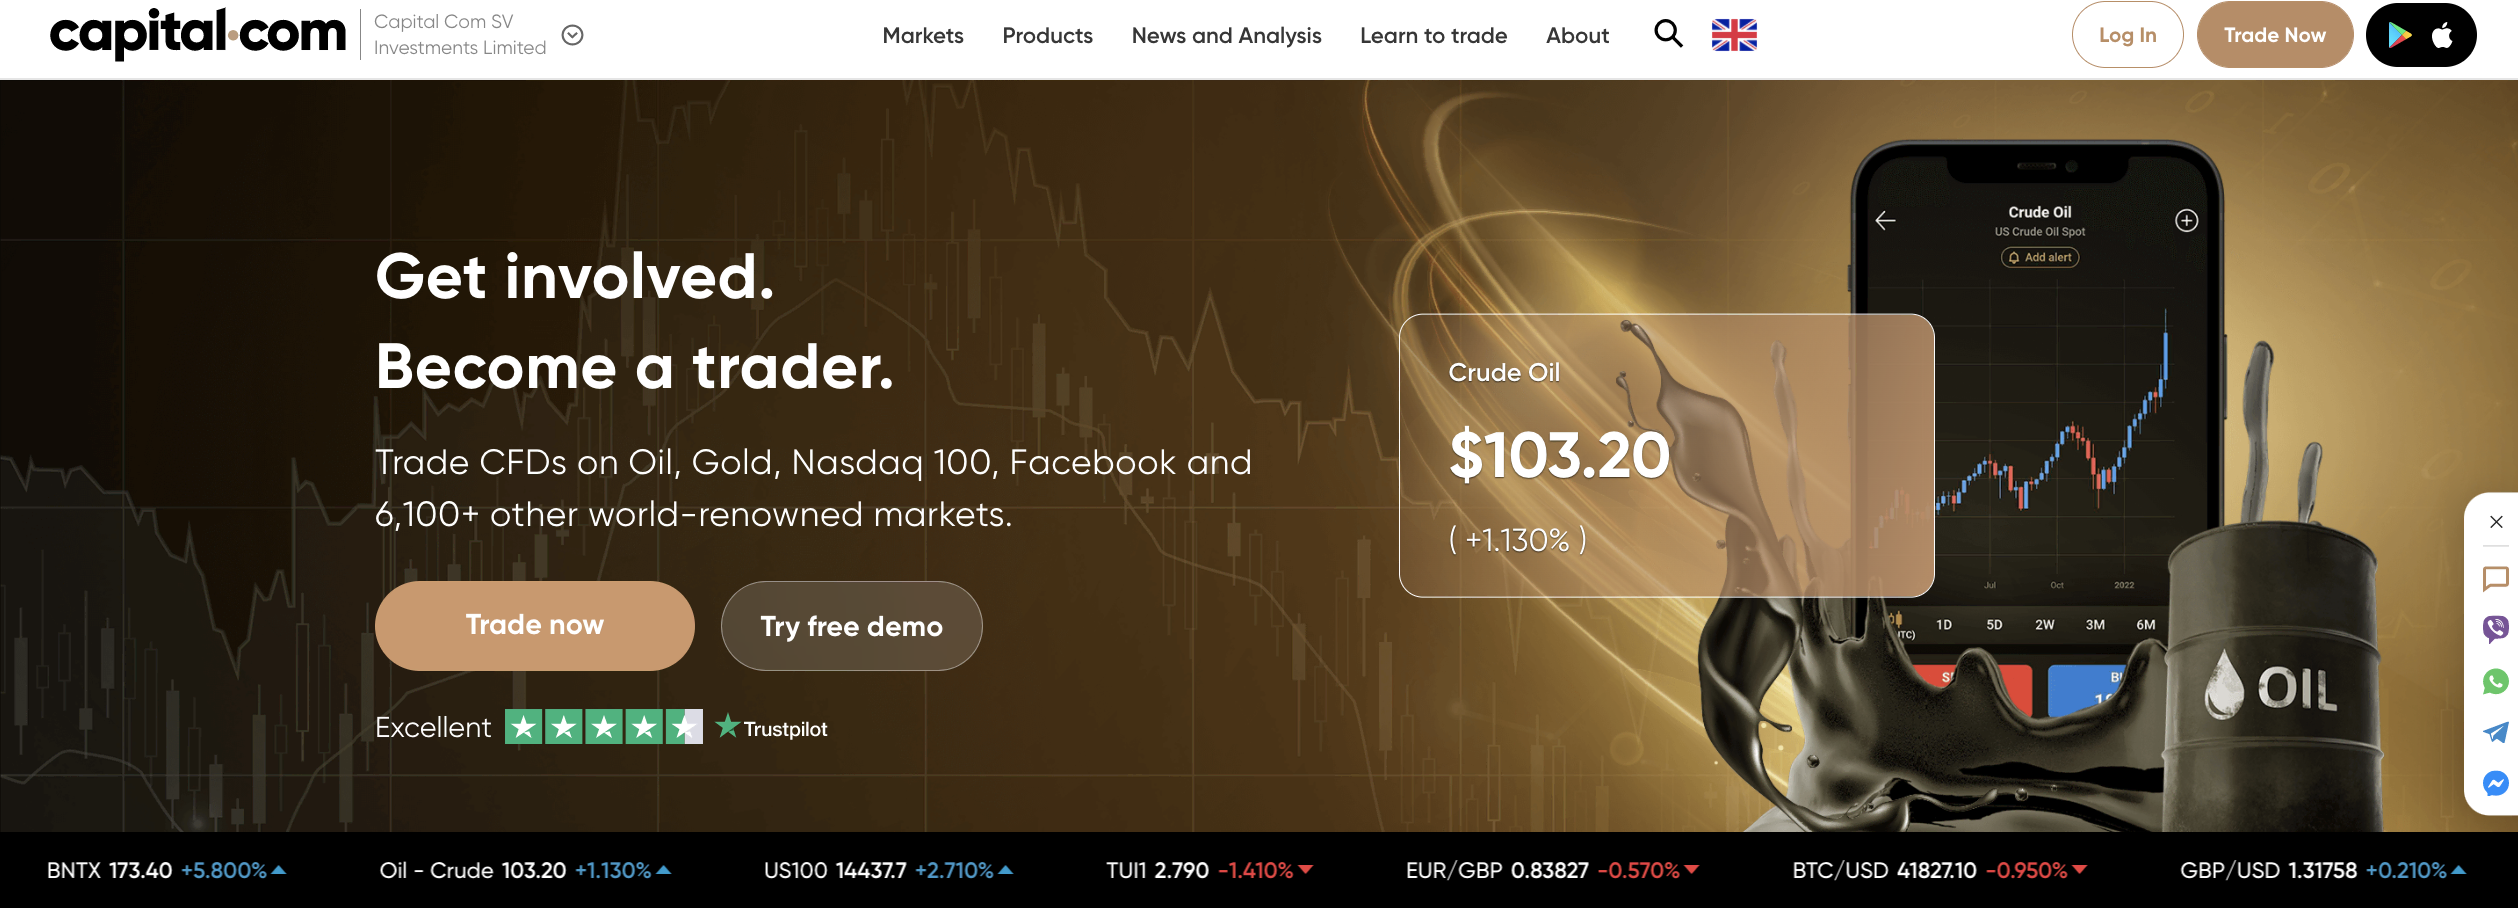 Den officiella webbplatsen för valutamäklaren Capital.com